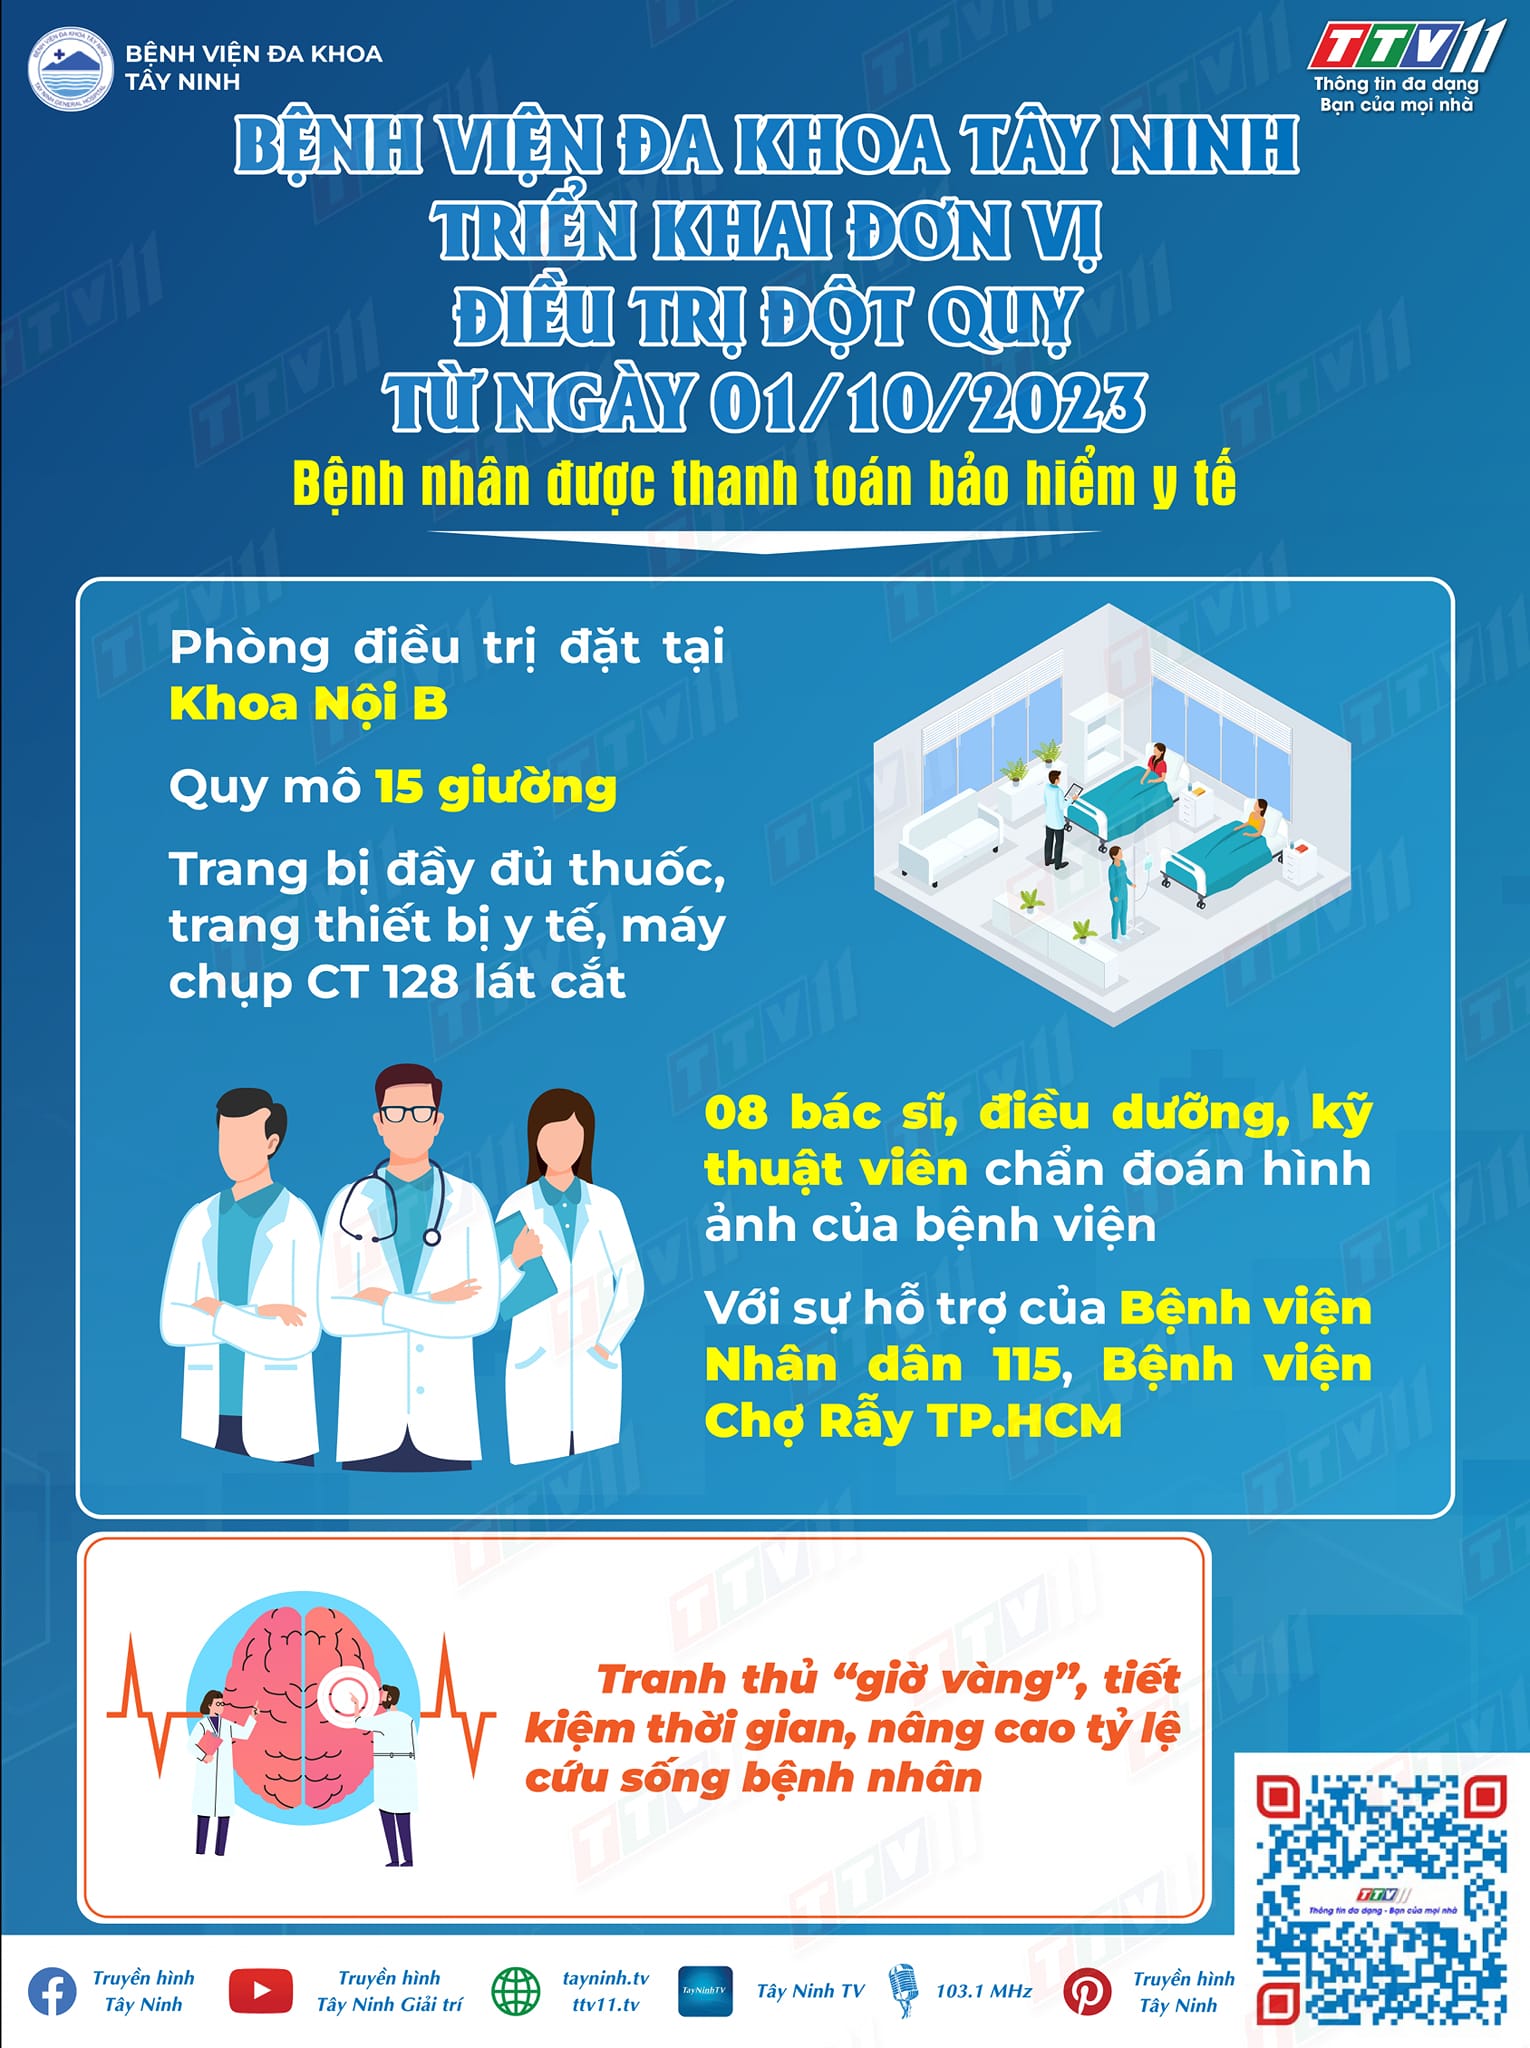 Bệnh viện Đa khoa Tây Ninh triển khai đơn vị điều trị đột quỵ từ ngày 01/10/2023 